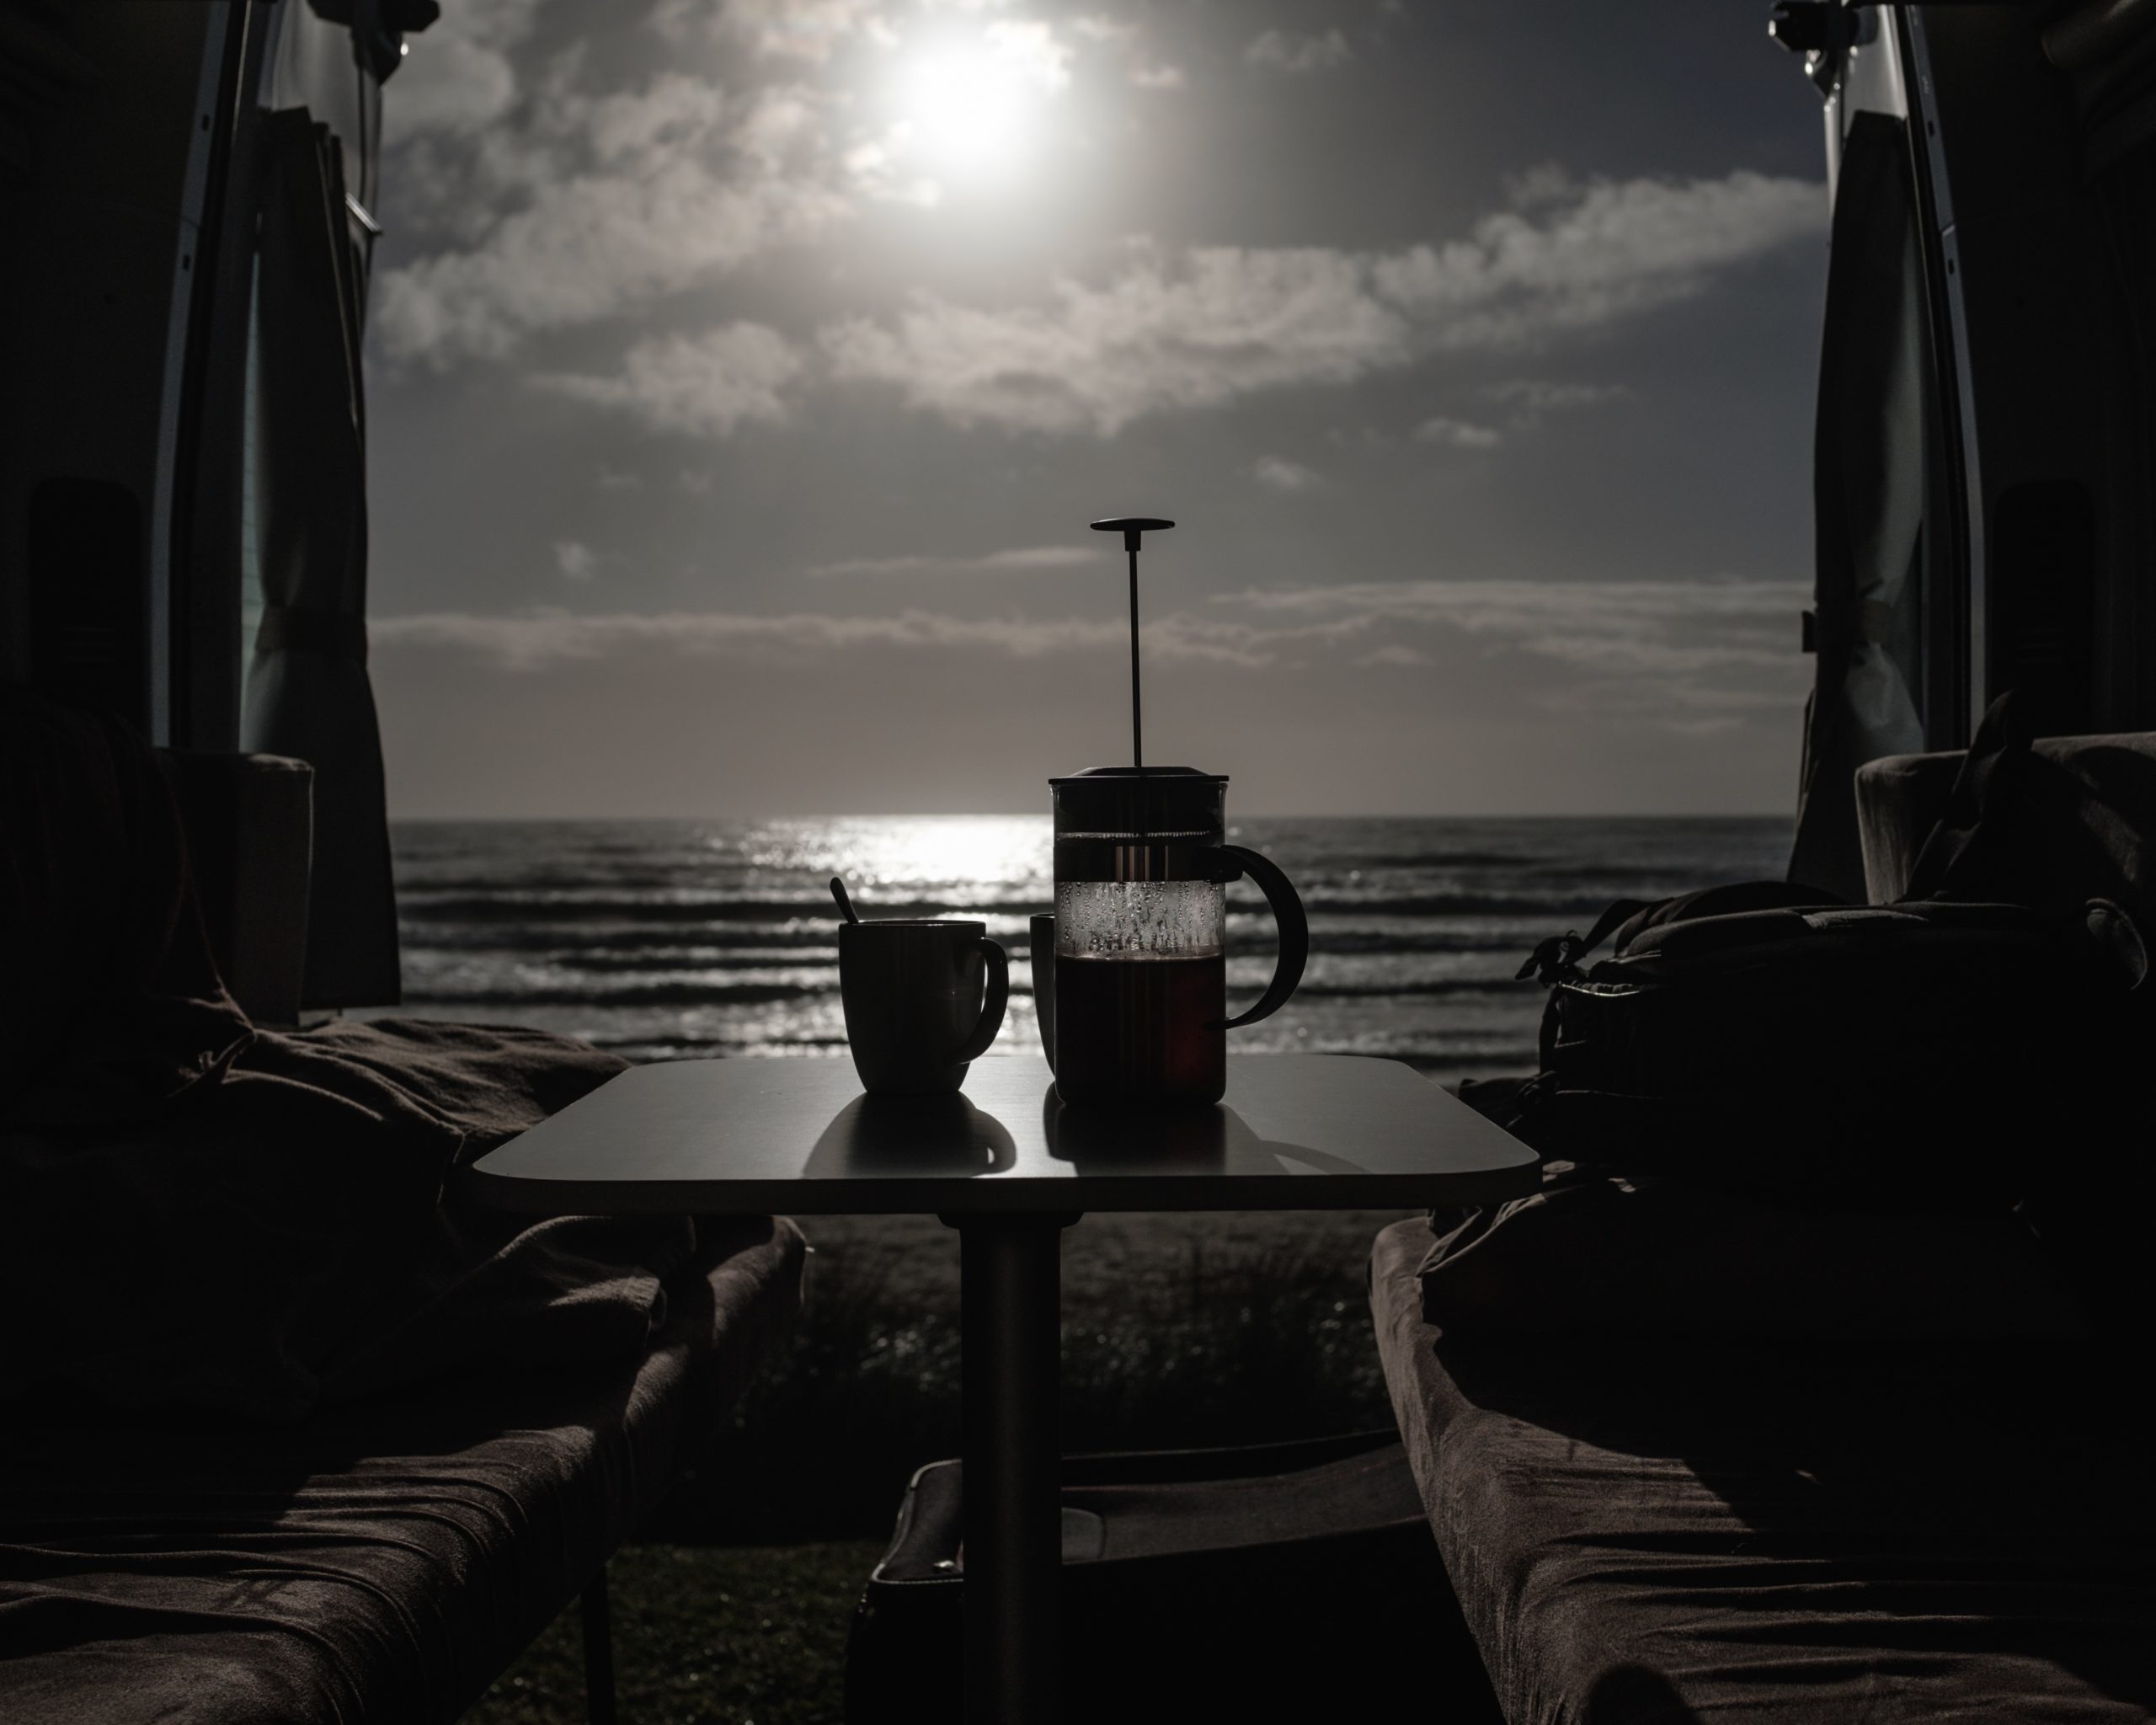 Depuis l'intérieur du campervan, durant la petit déjeuné. Une cafetière à piston et une tasse sont posées sur la table devant la porte arrière ouverte sur la plage au levé du soleil.